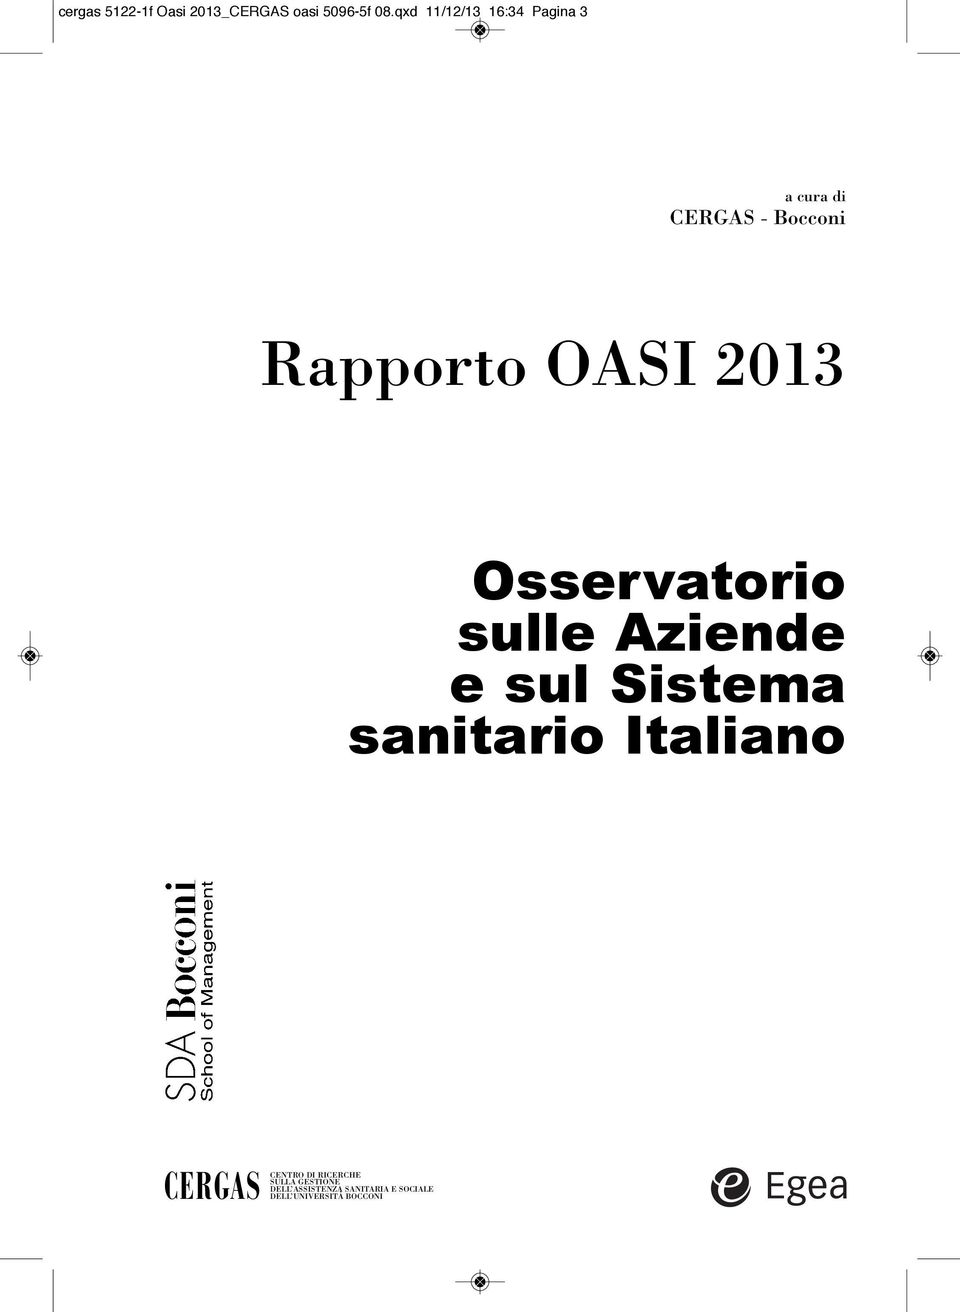 2013 Osservatorio sulle Aziende e sul Sistema sanitario Italiano